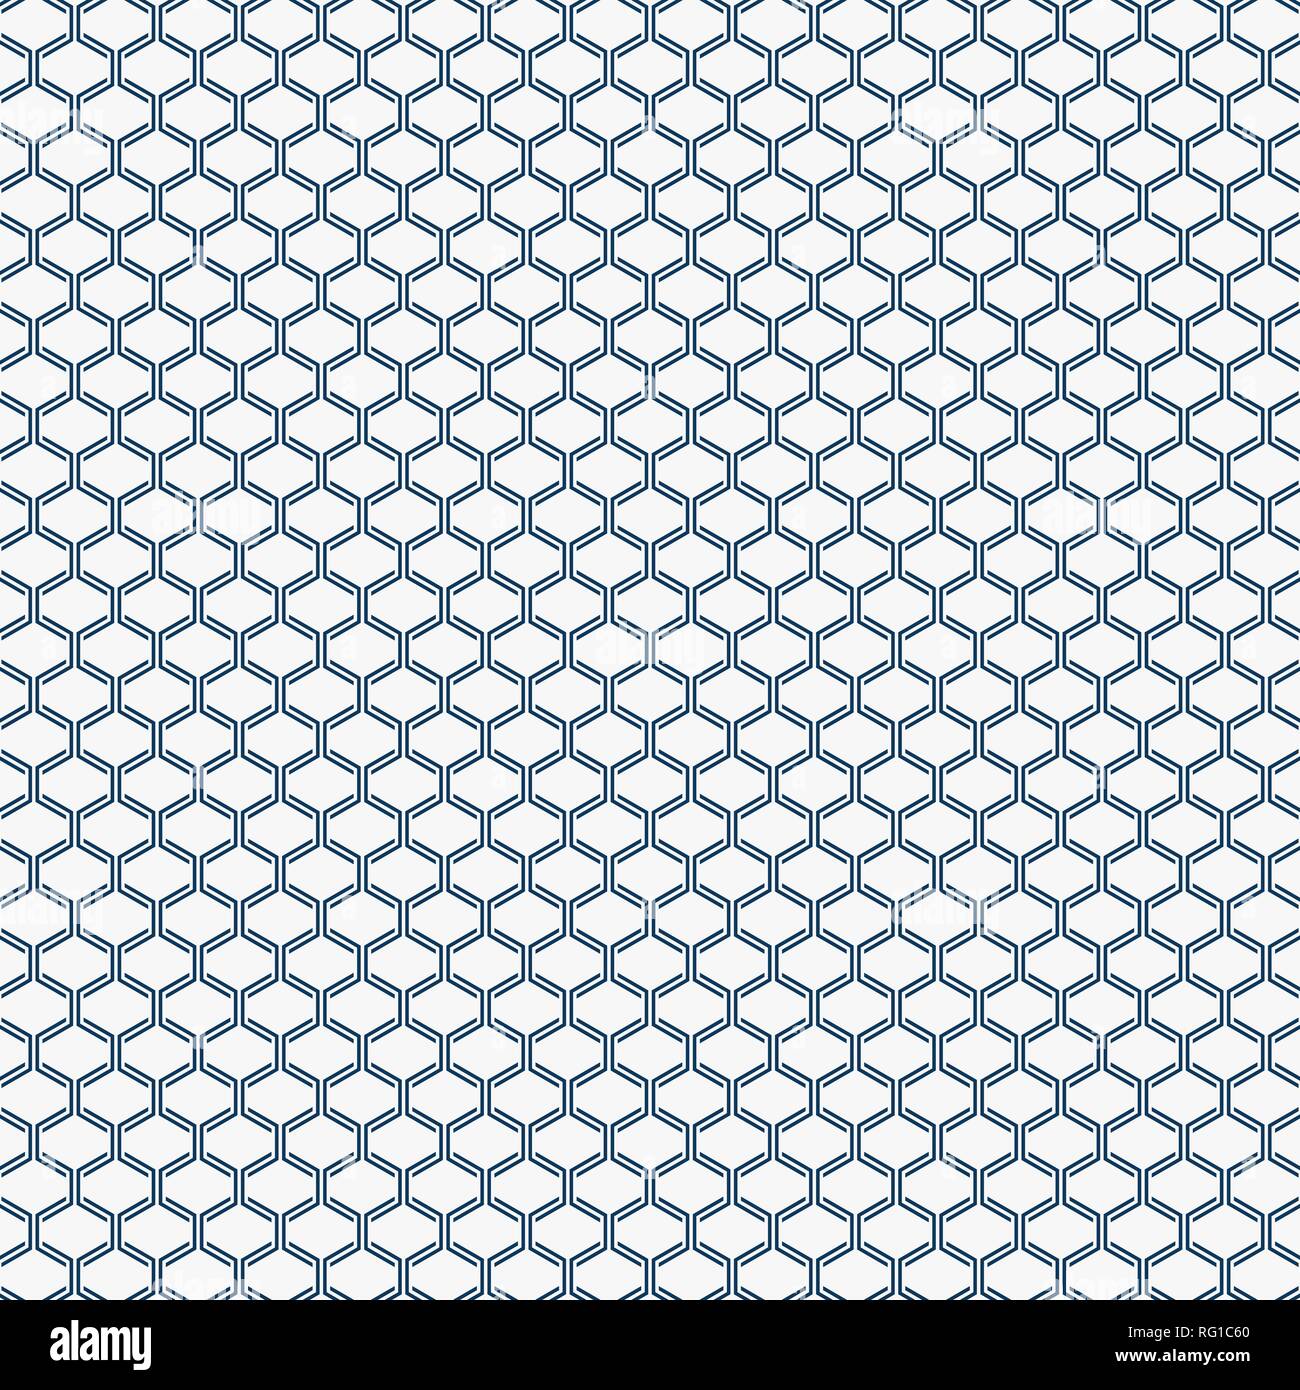 Zusammenfassung Einfache blaue geometrische Muster formen, verzieren auf weißem Hintergrund. Einfache Gegenwart. Sie können die Broschüre, Banner, Wallpaper, jährliche Rep Stock Vektor